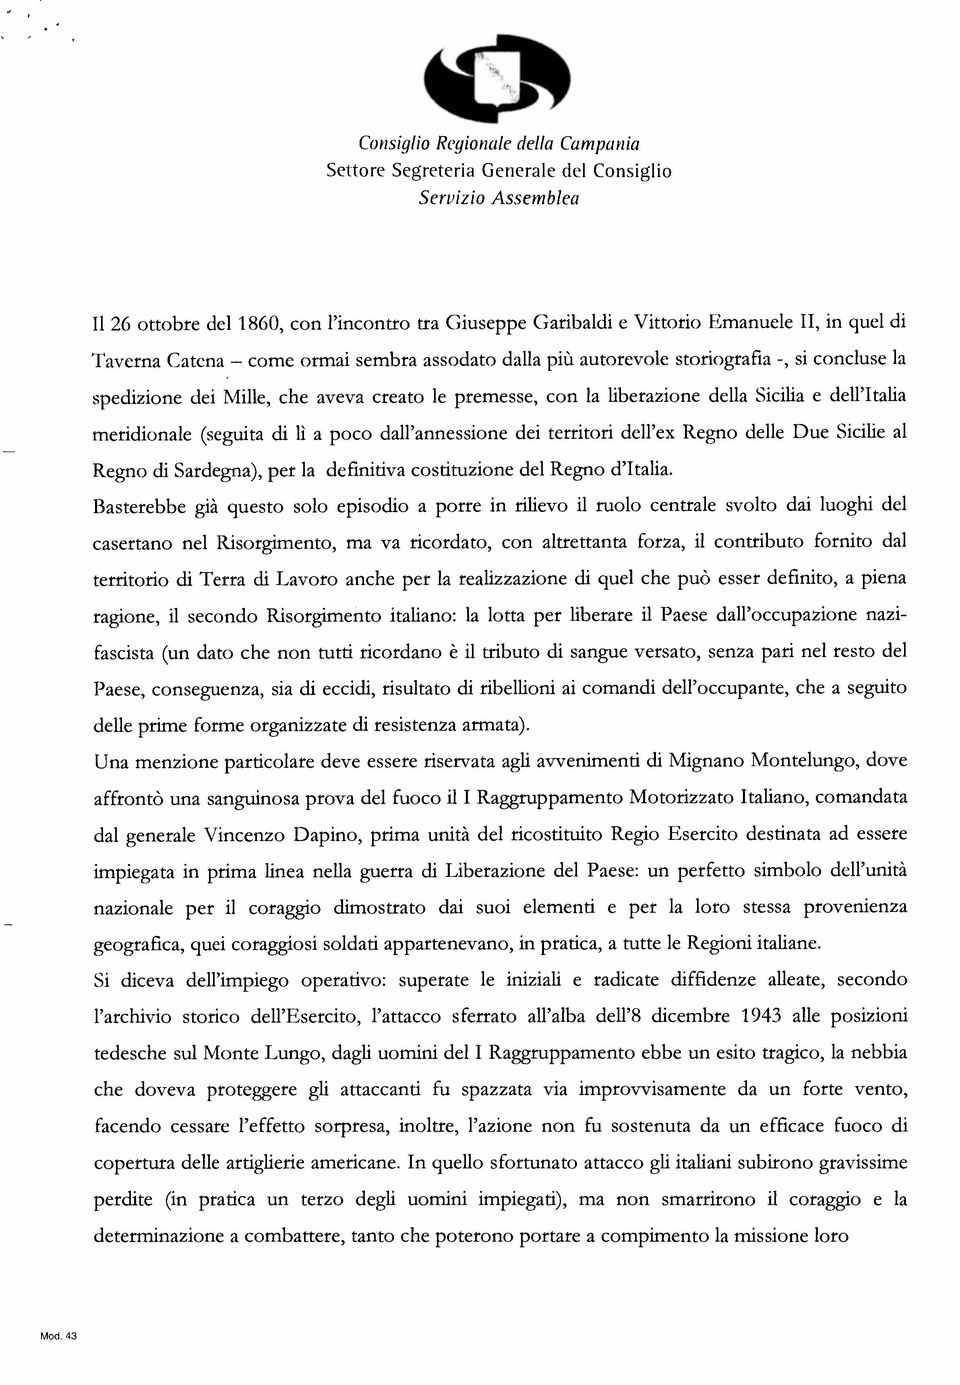 a poco dall annessione dei territori dell ex Regno delle Due Sicilie al Regno di Sardegna), per la definitiva costituzione del Regno d Italia.